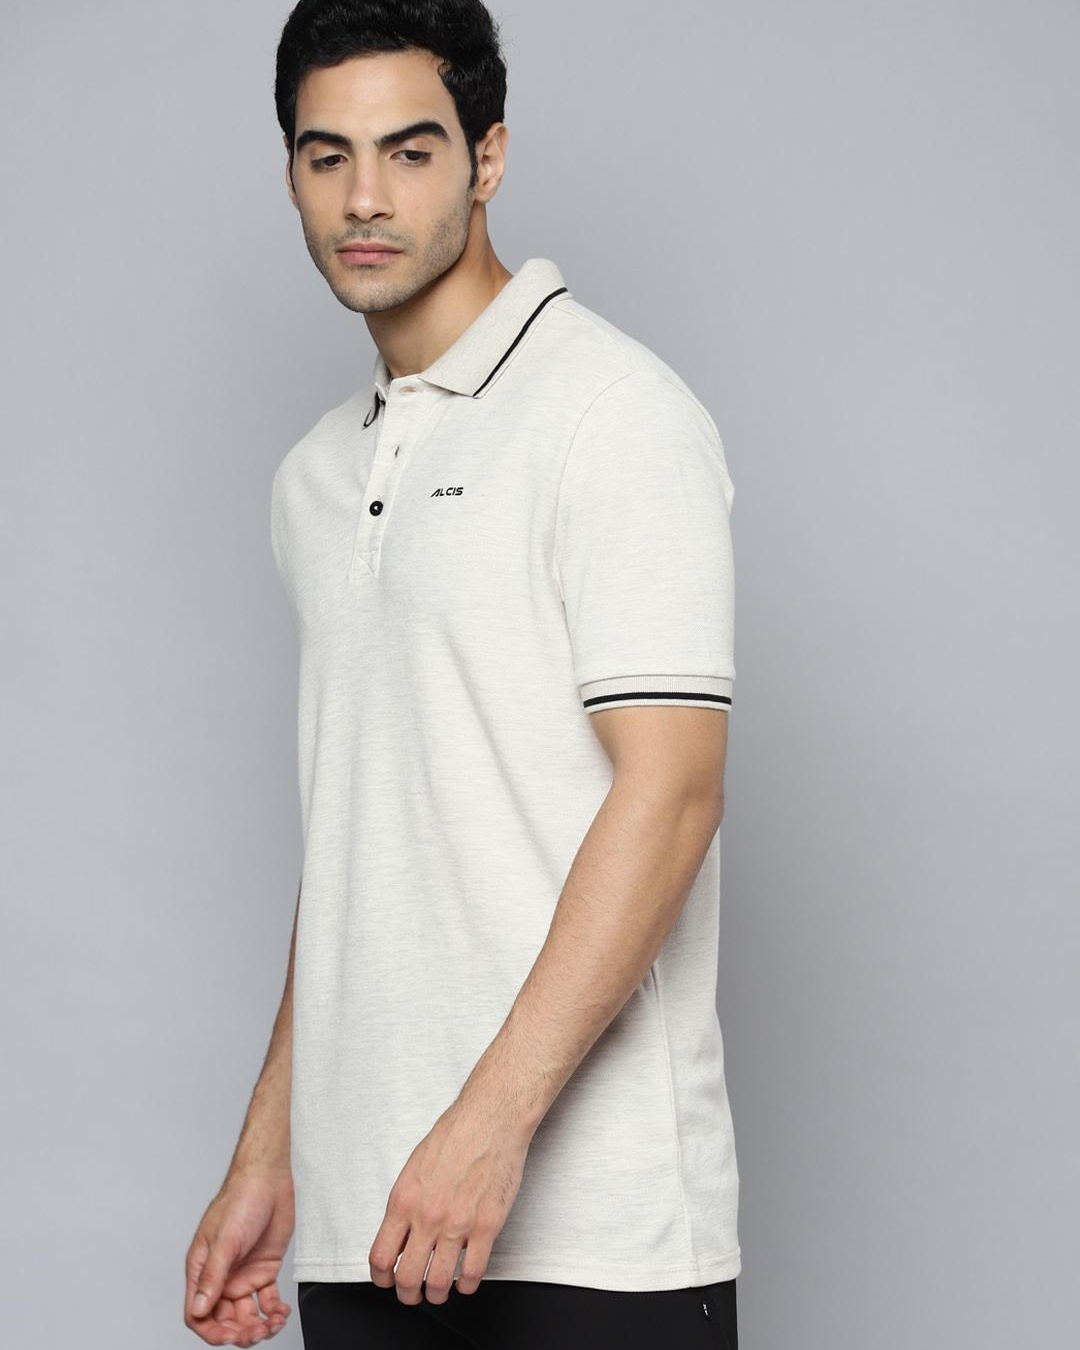 Buy Men's White Slim Fit Polo T-shirt for Men White Online at Bewakoof